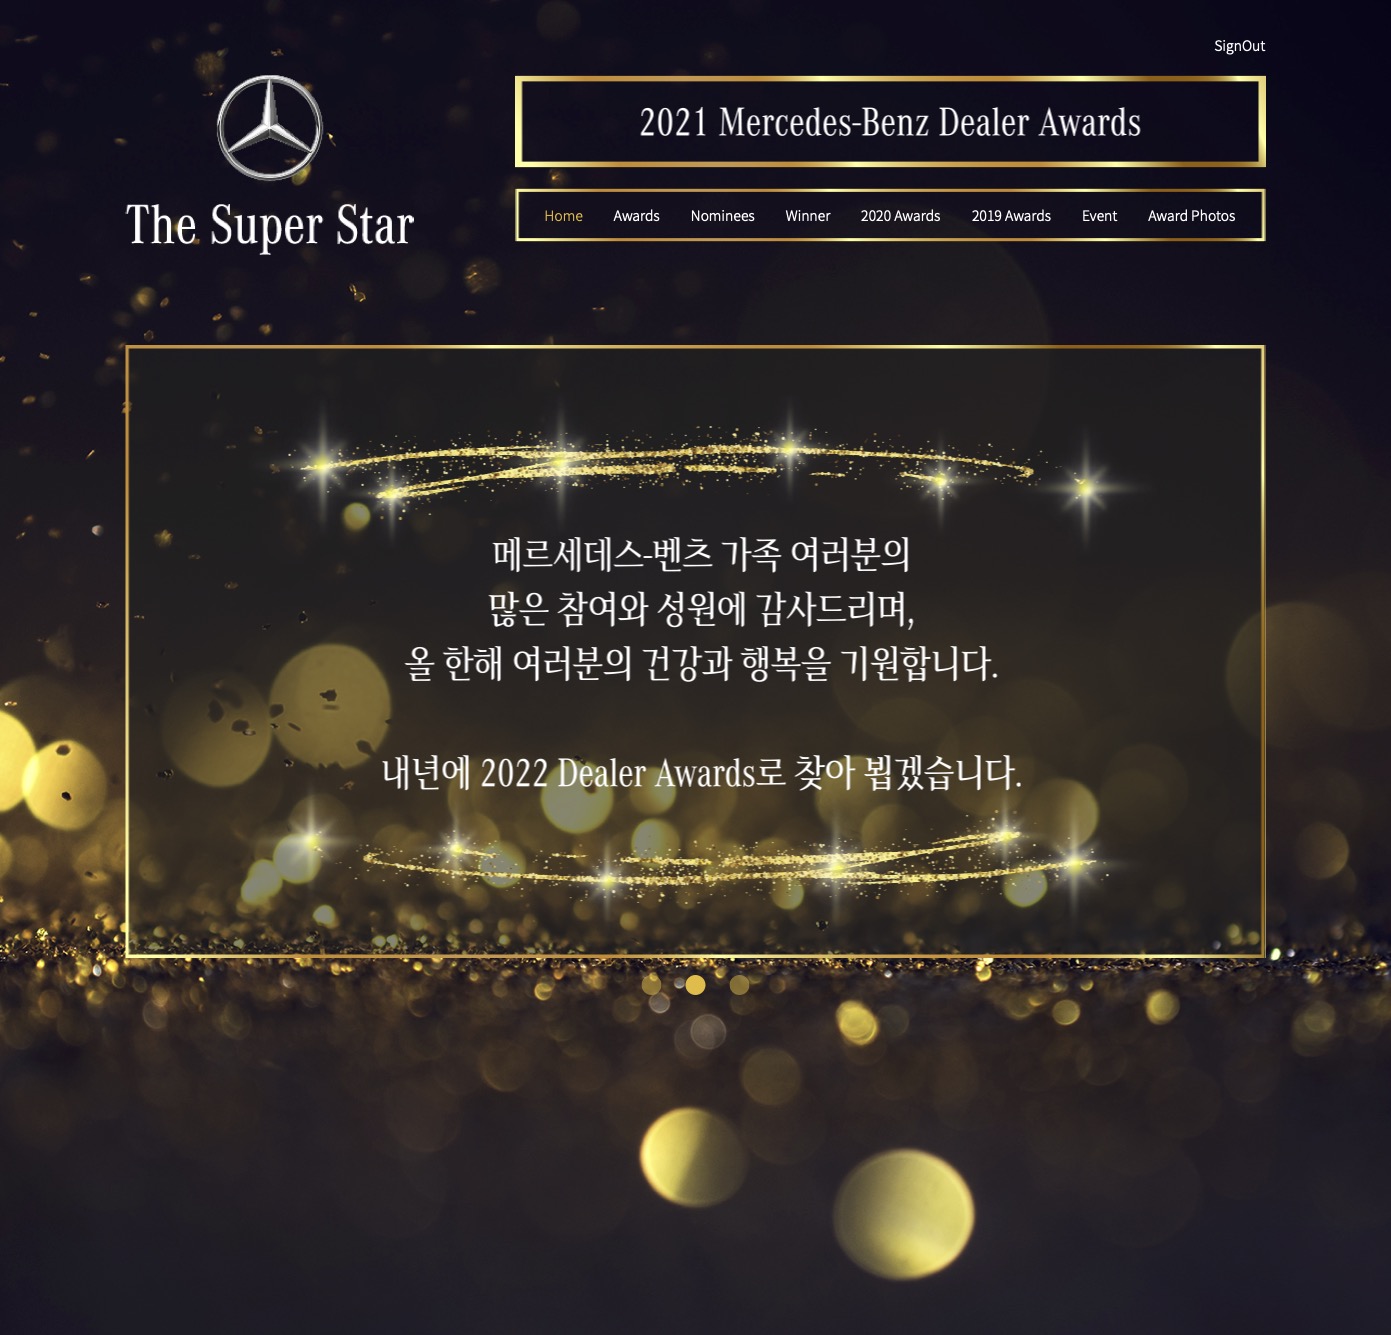 2021 Mercedes-Benz Dealer Awards.jpg